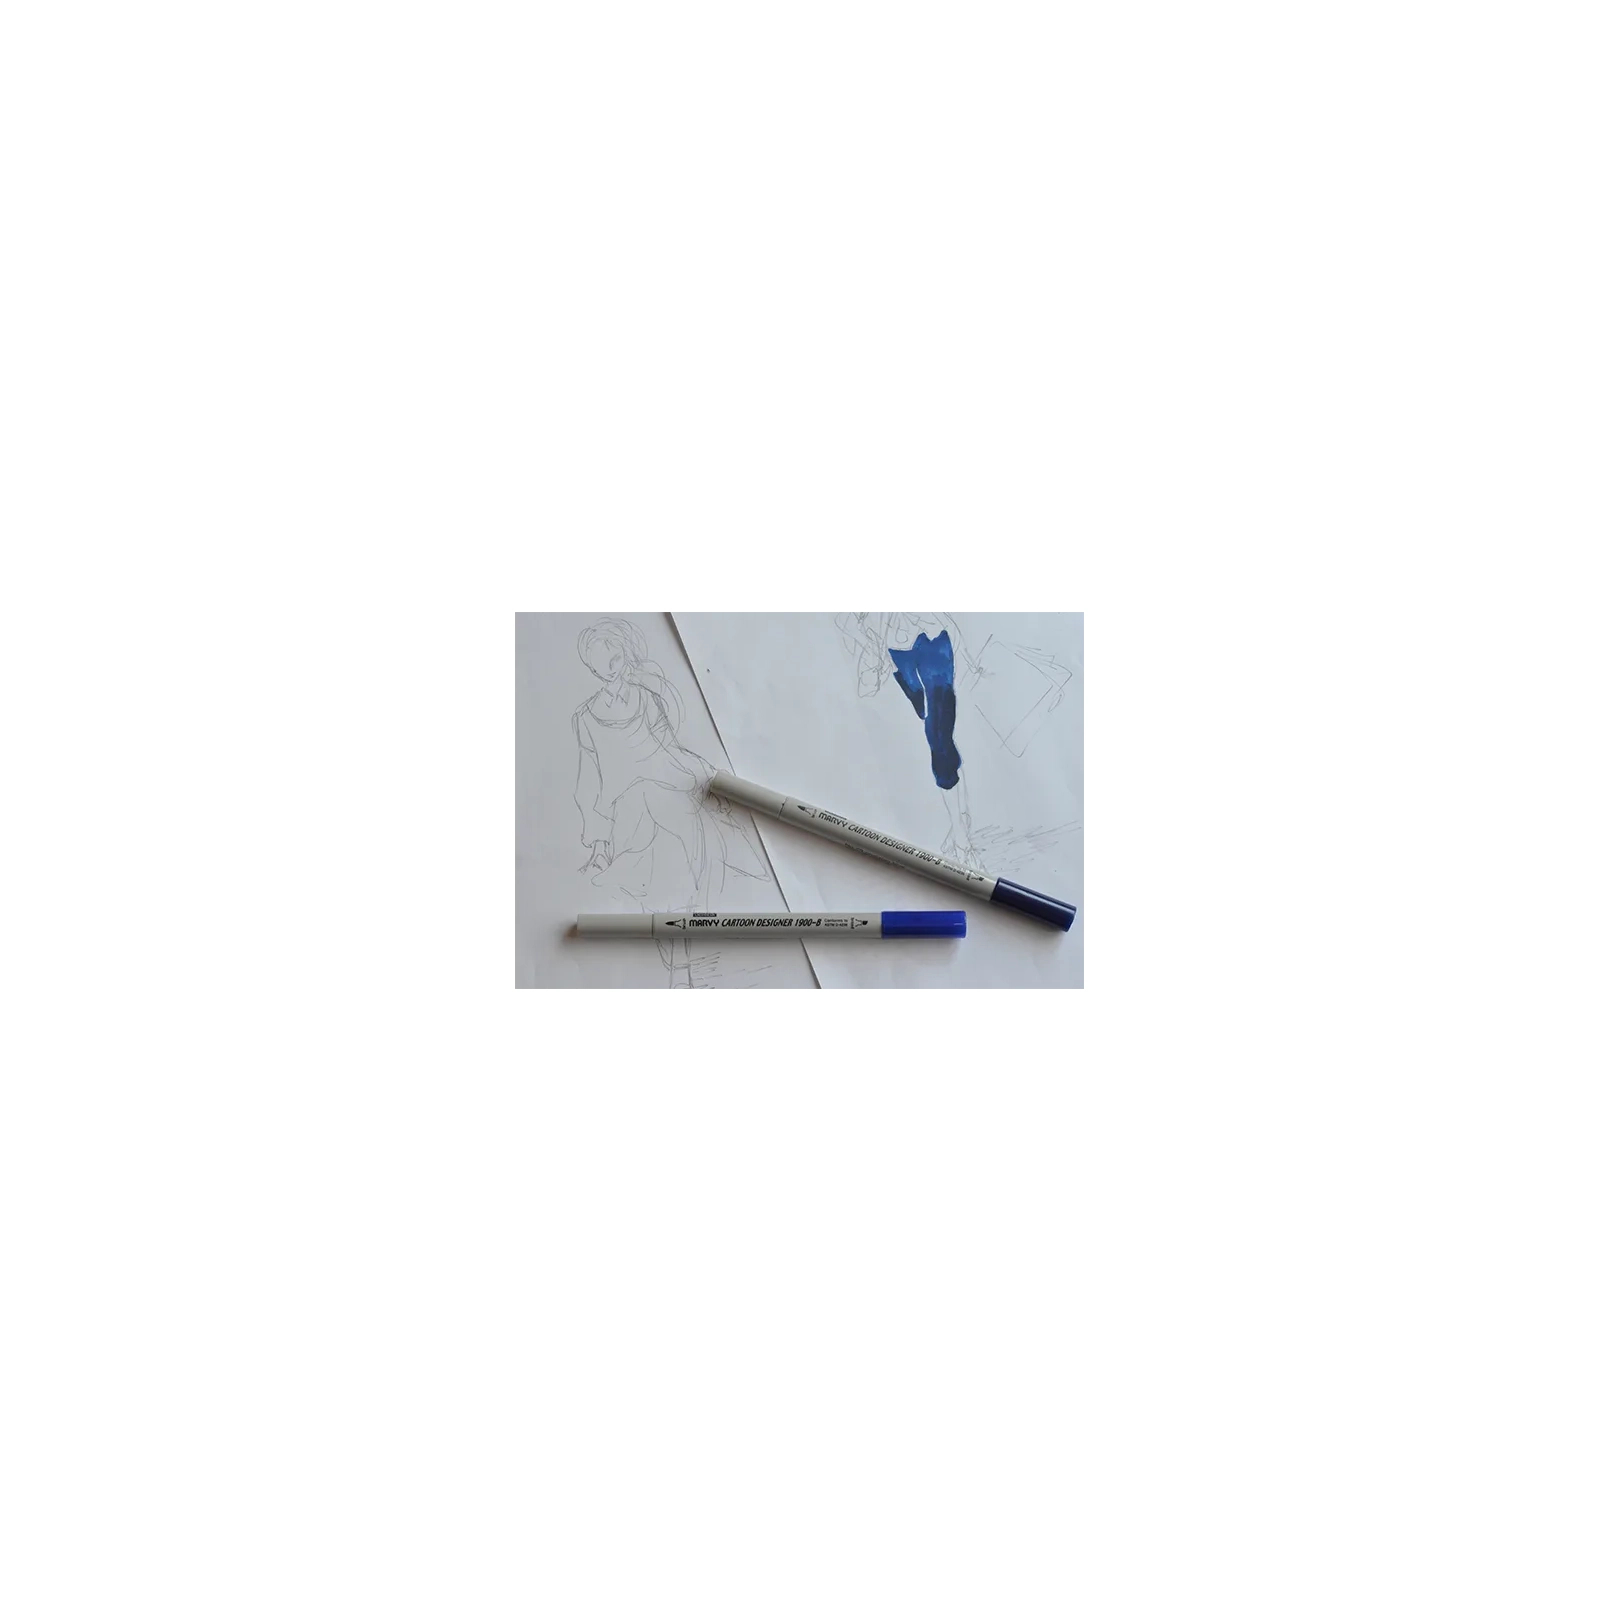 Художественный маркер Marvy двусторонний 1900B-S Охра золотистая (752481291230) изображение 4